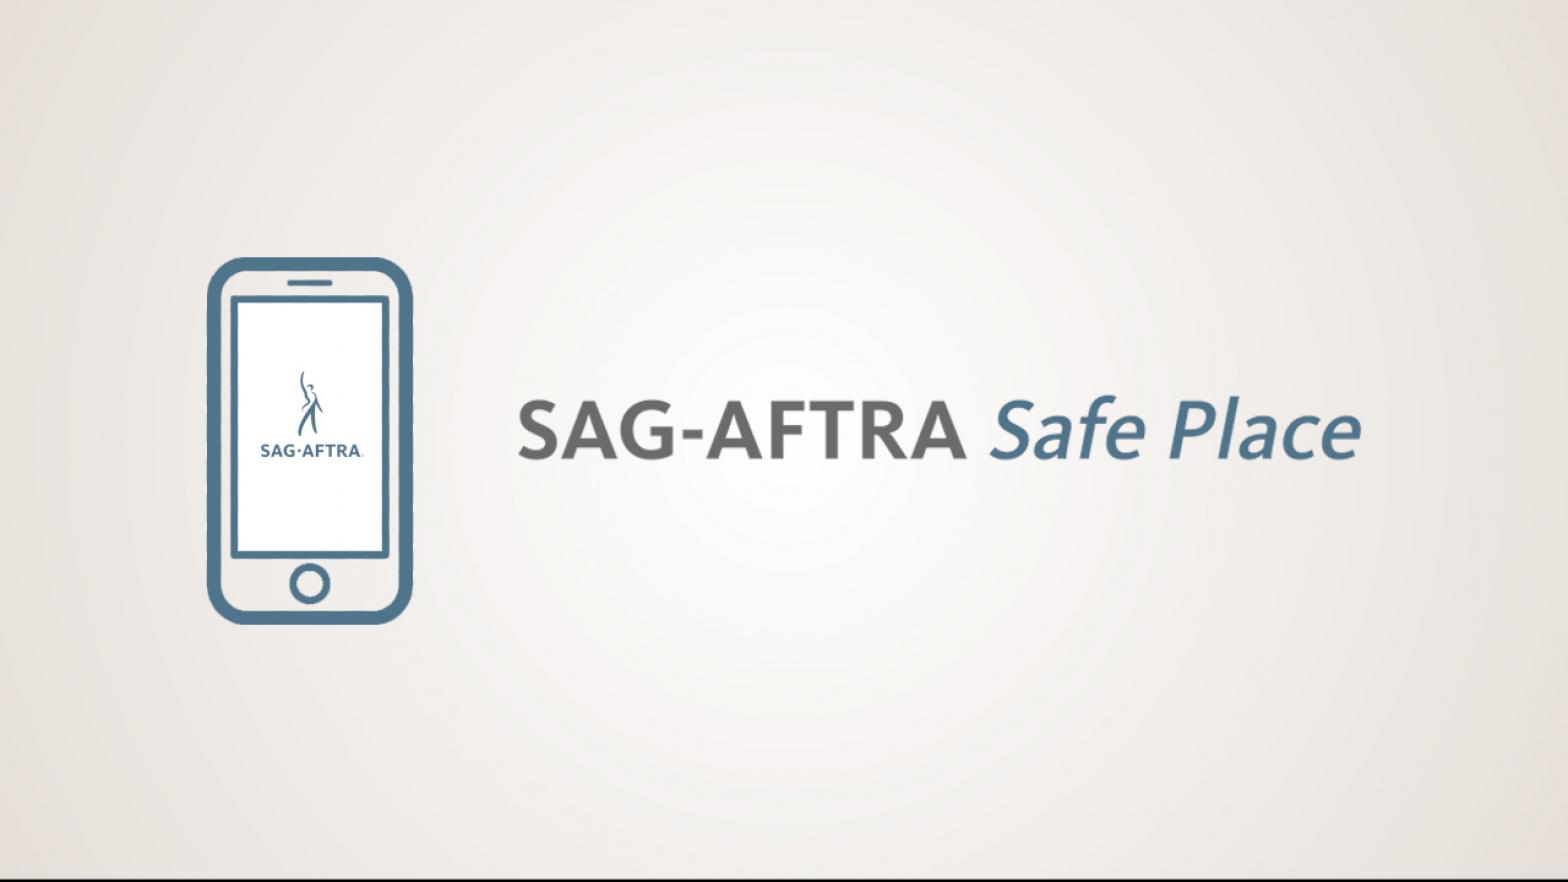 'SAG-AFTRA Safe Place' con un dispositivo móvil a la izquierda.